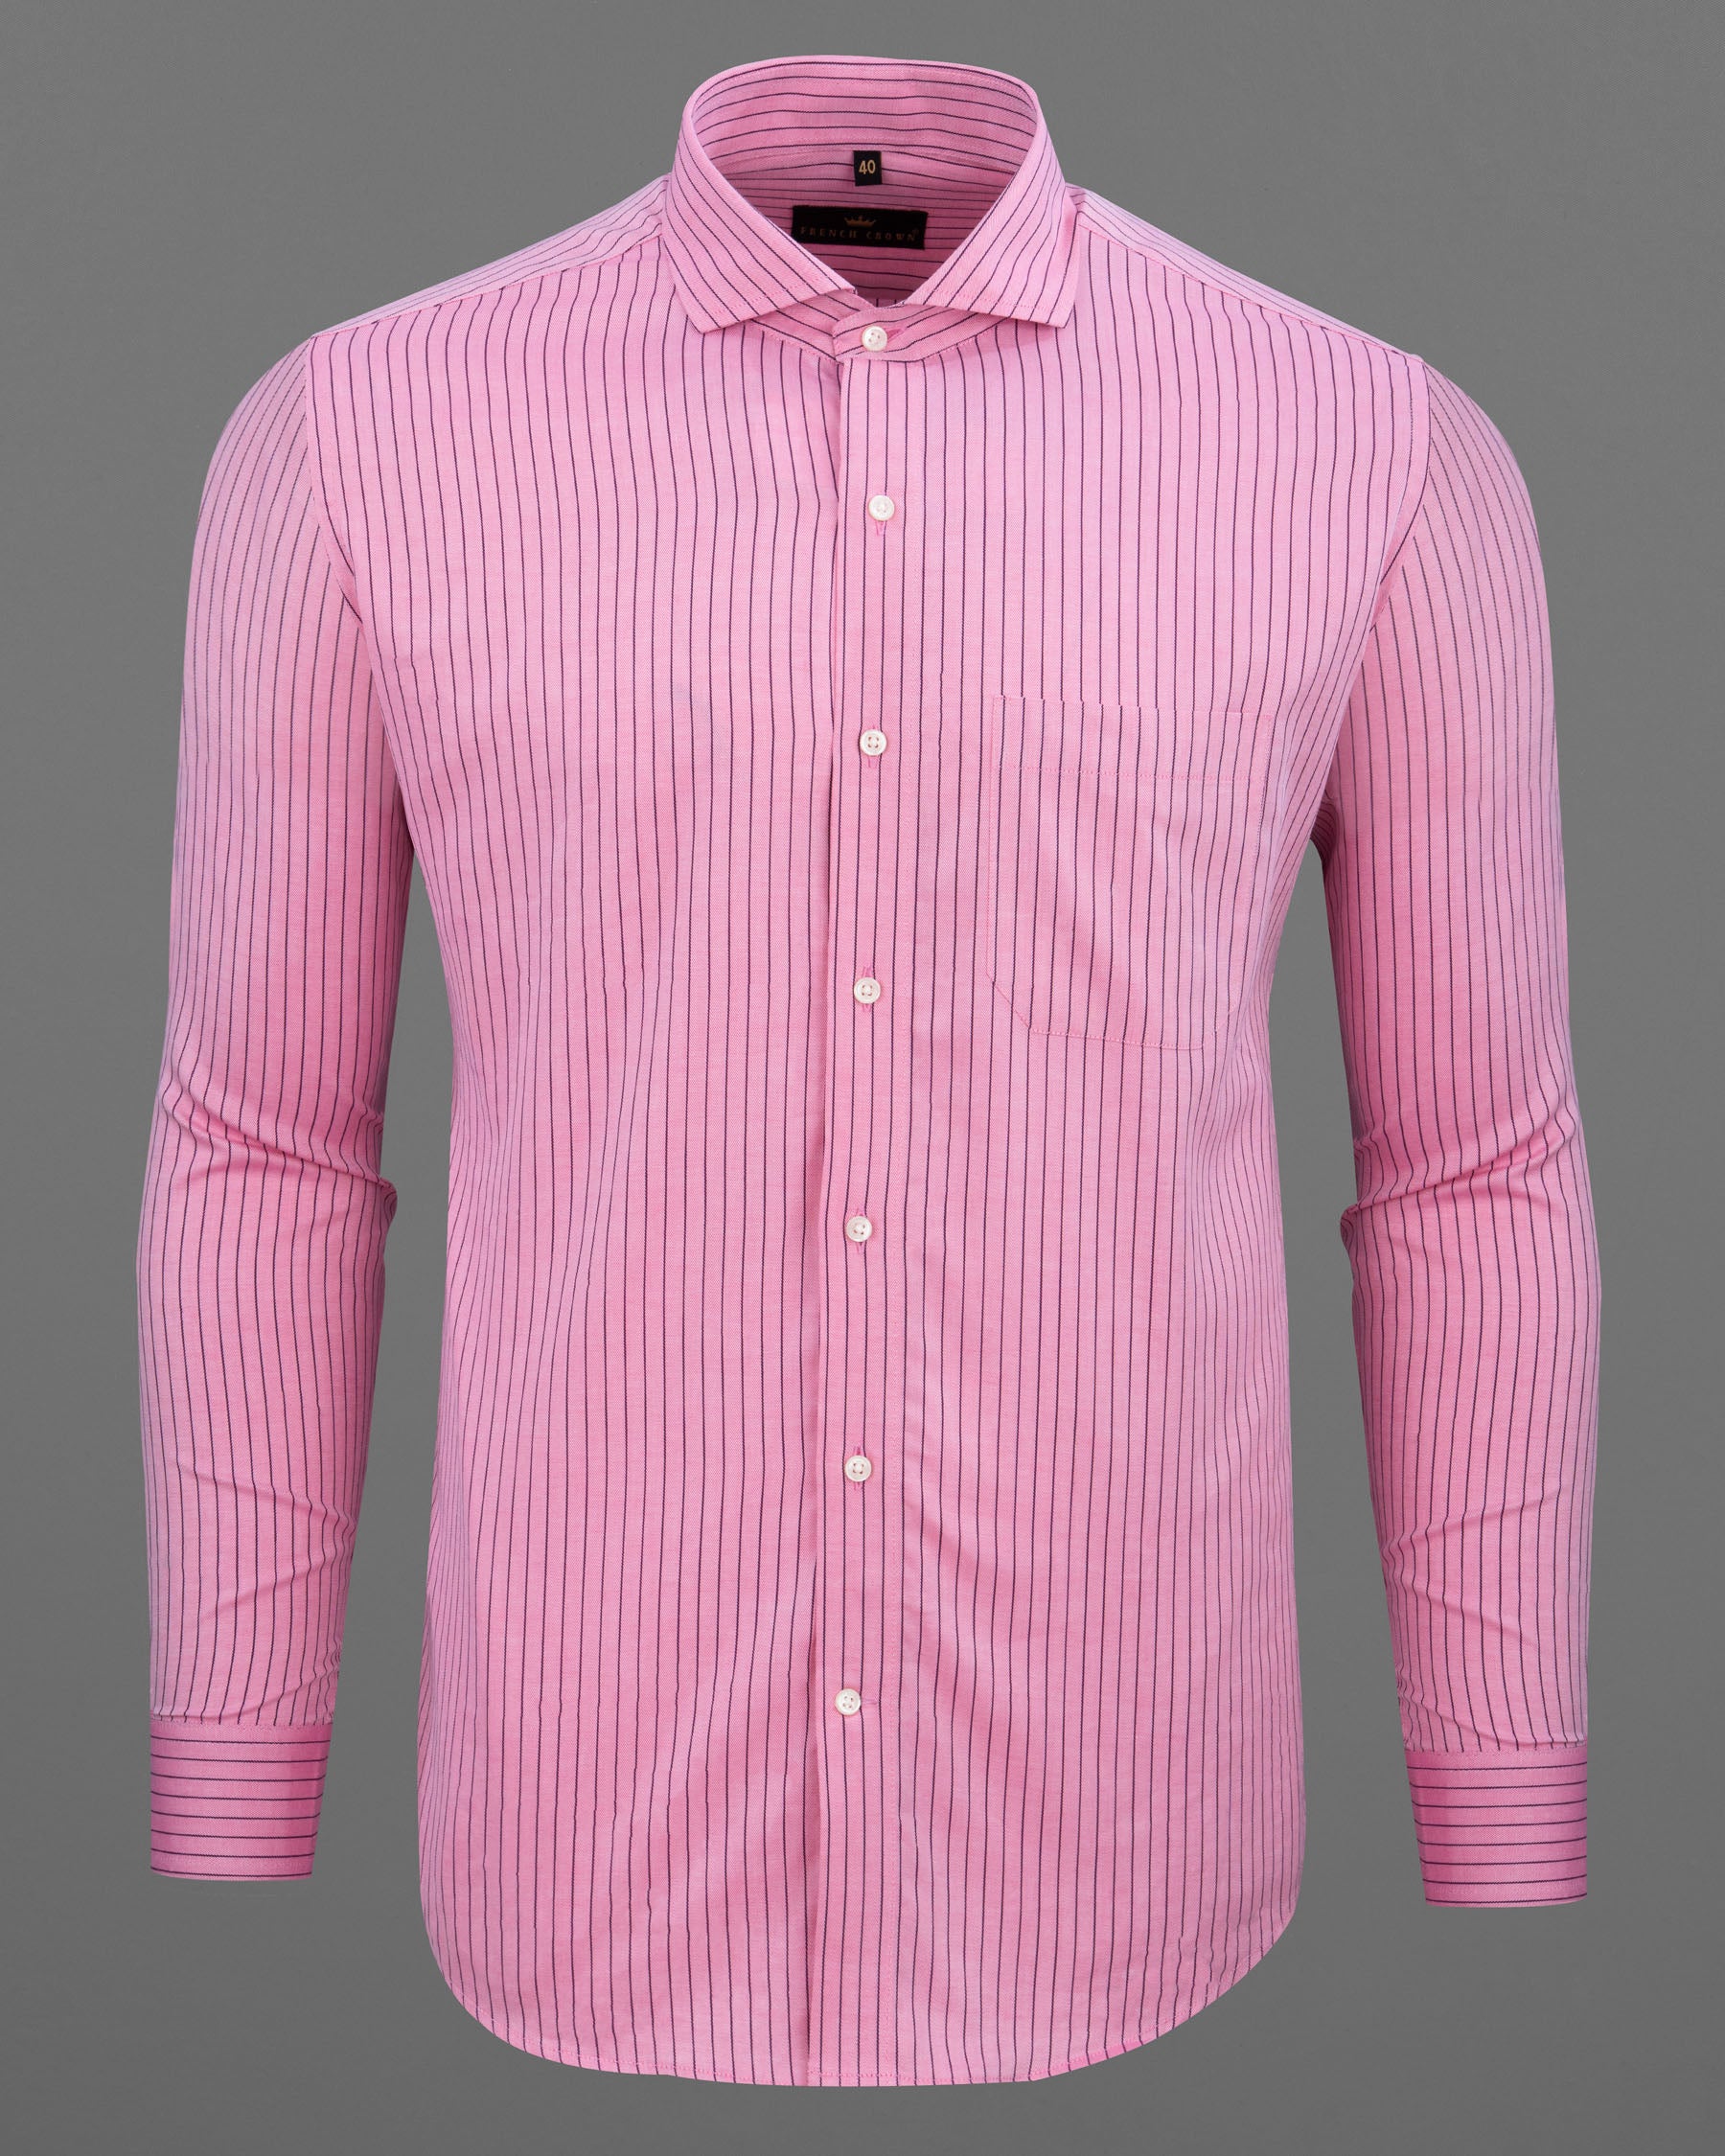 Pink Twill Striped Premium Cotton Shirt 5962-CA-38, 5962-CA-H-38, 5962-CA-39, 5962-CA-H-39, 5962-CA-40, 5962-CA-H-40, 5962-CA-42, 5962-CA-H-42, 5962-CA-44, 5962-CA-H-44, 5962-CA-46, 5962-CA-H-46, 5962-CA-48, 5962-CA-H-48, 5962-CA-50, 5962-CA-H-50, 5962-CA-52, 5962-CA-H-52